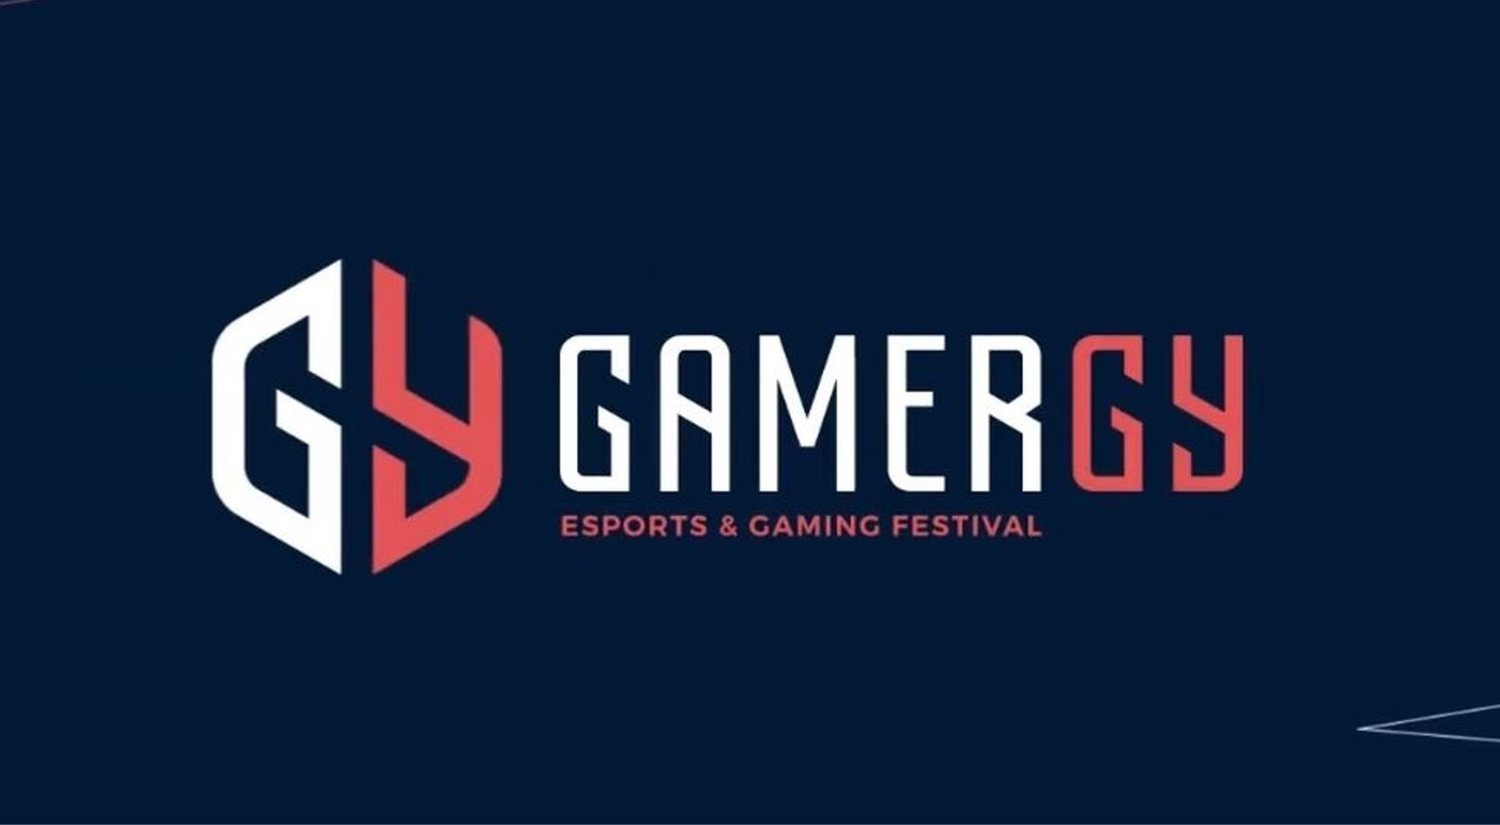 Gamergy 2019 Madrid: el evento eSports más importante de España